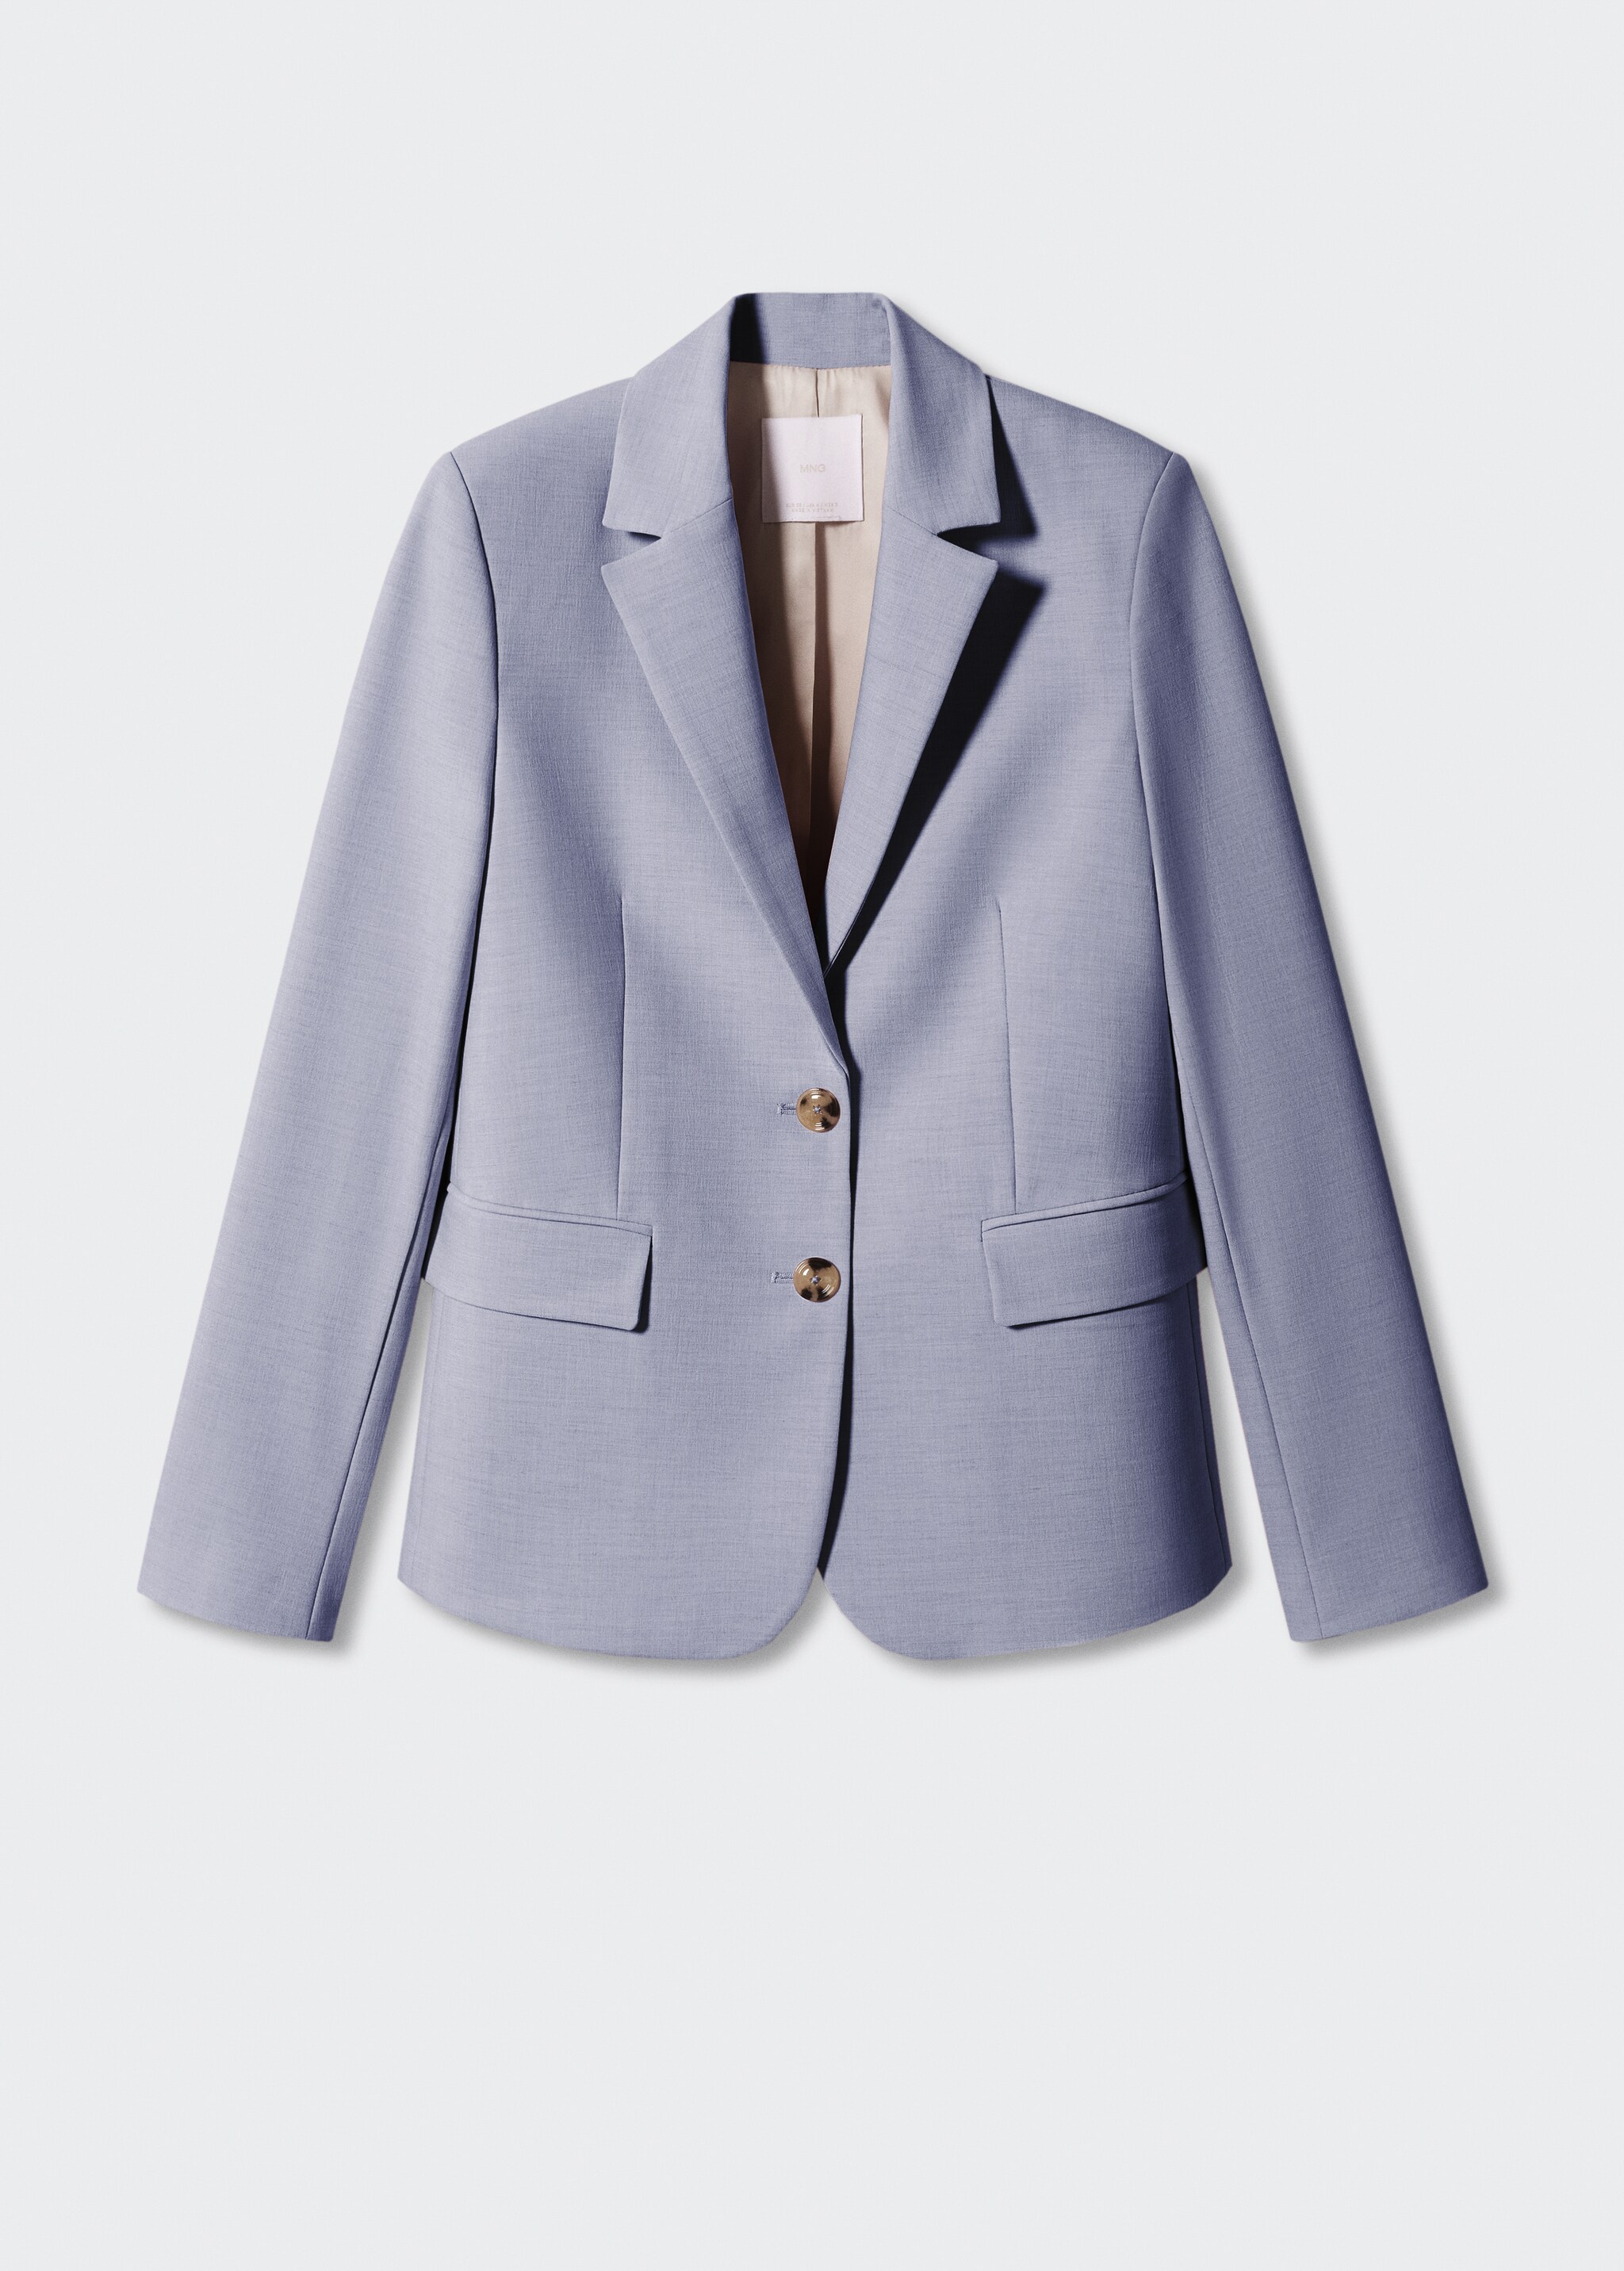 Peak lapel suit blazer - Article without model